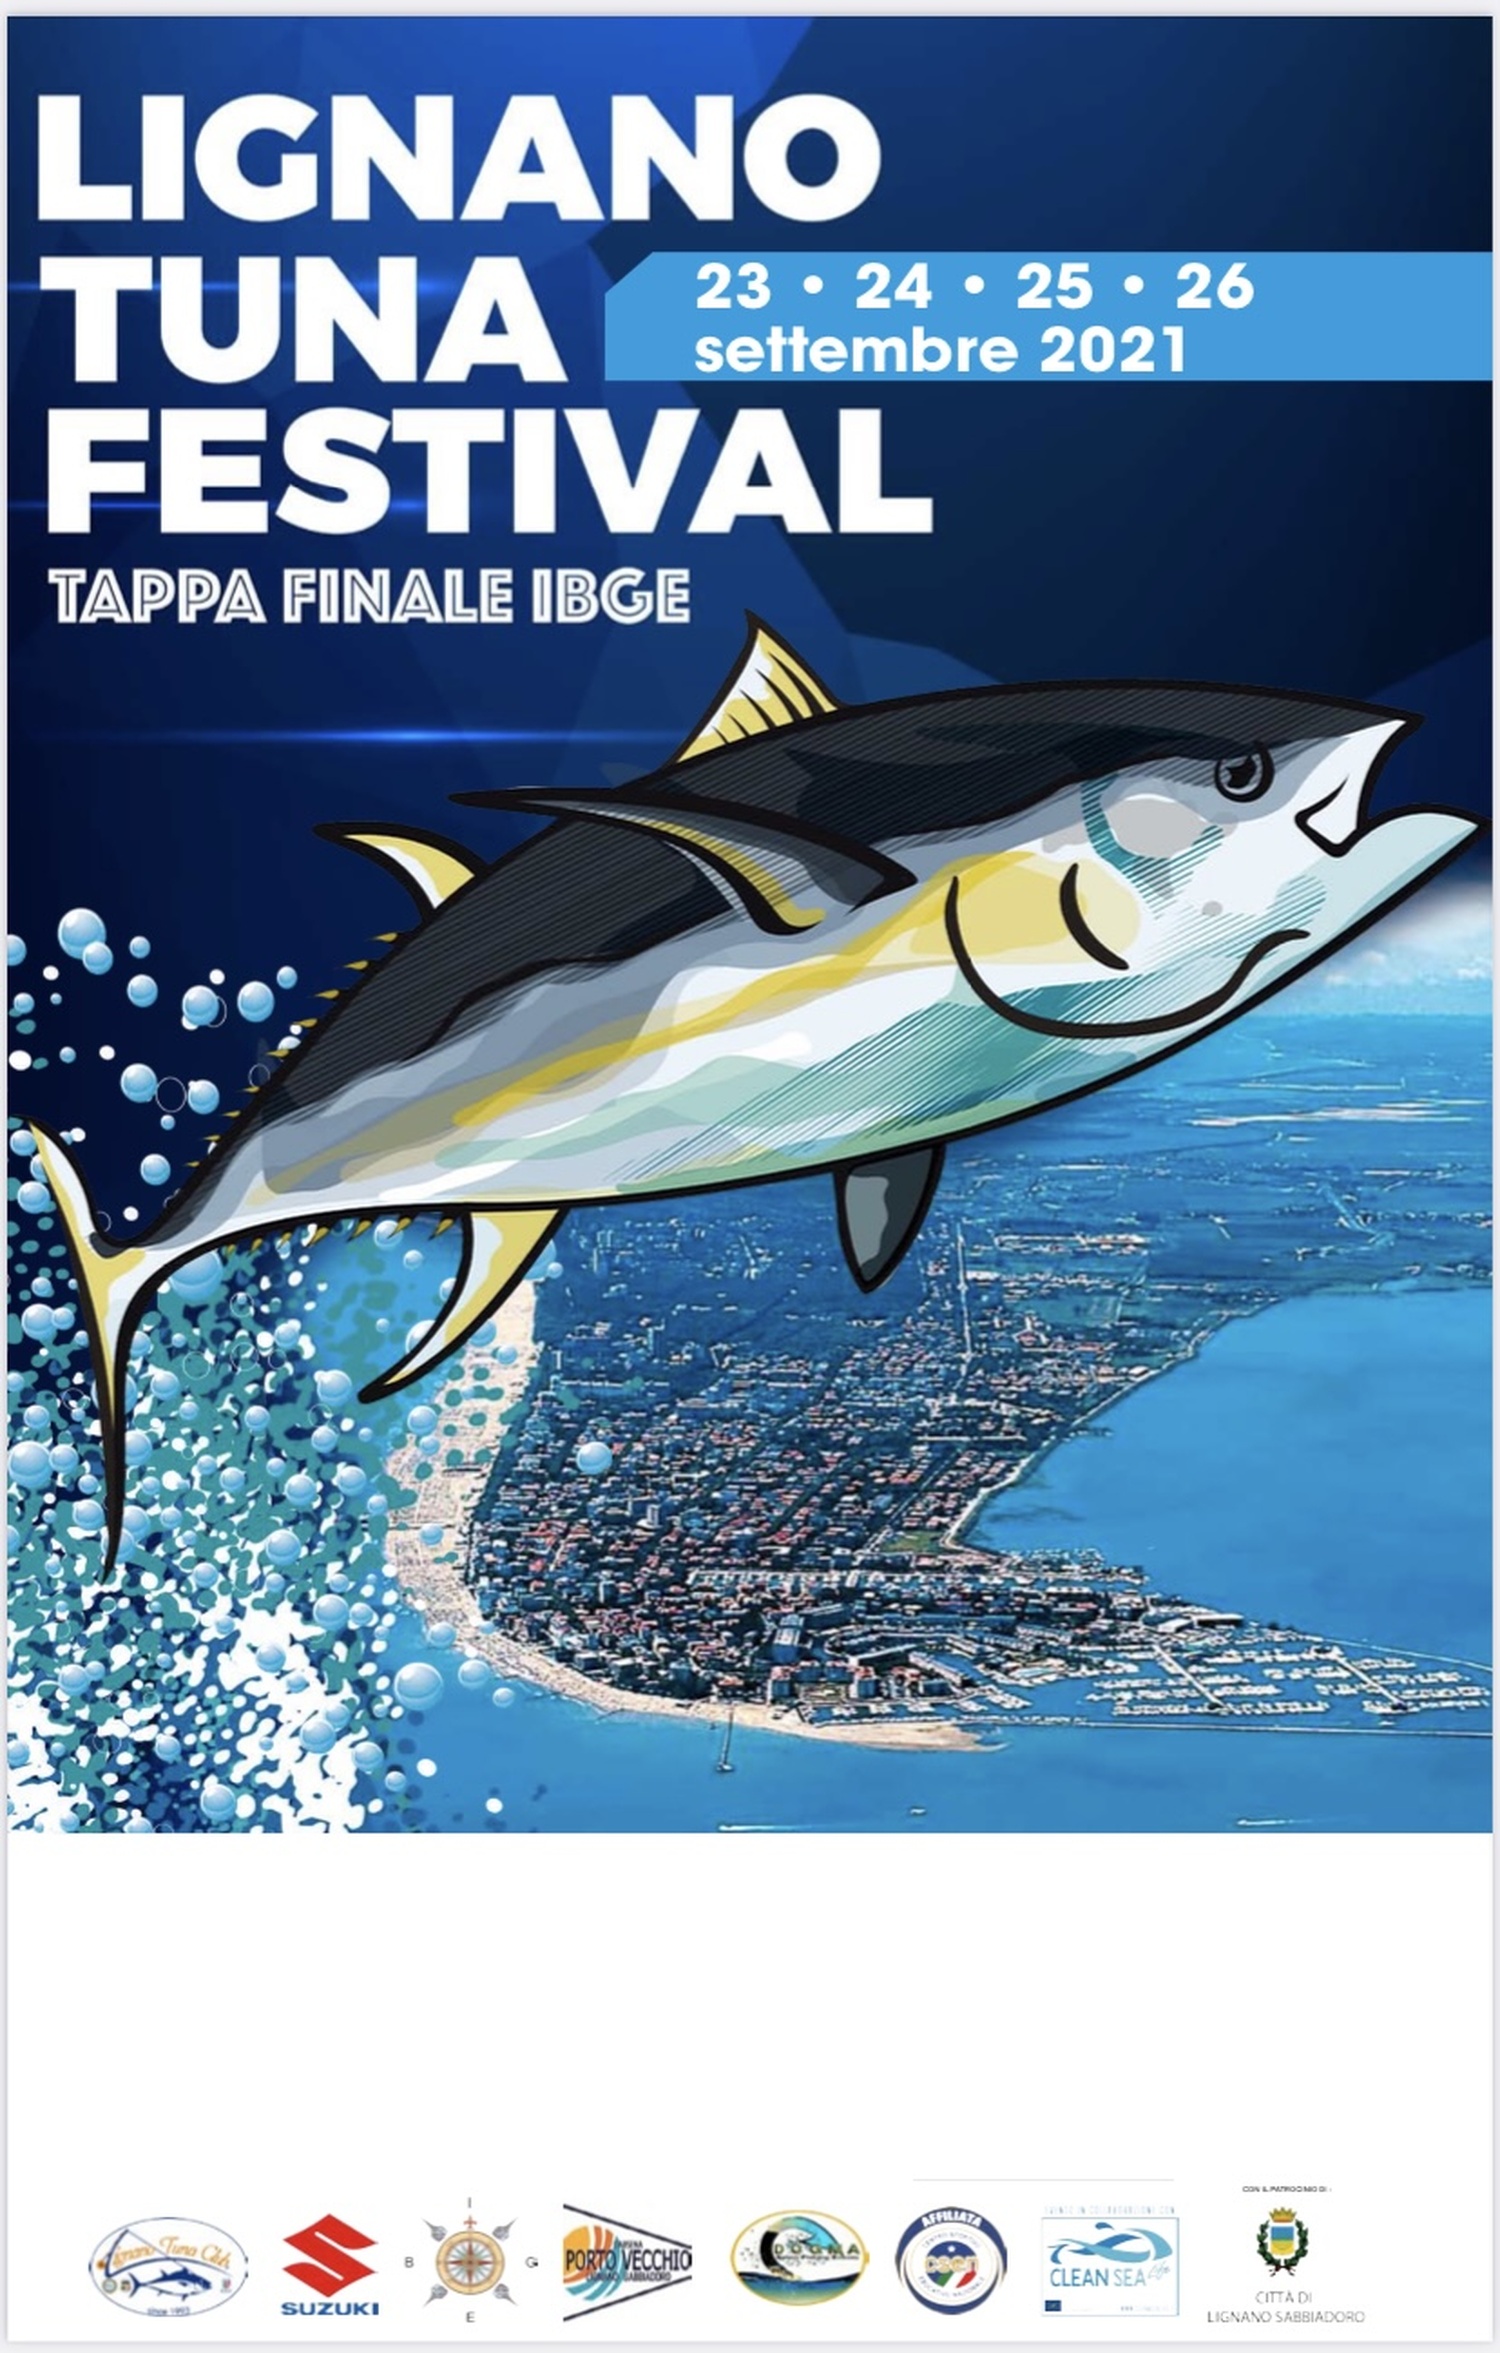 Lignano Tuna Festival